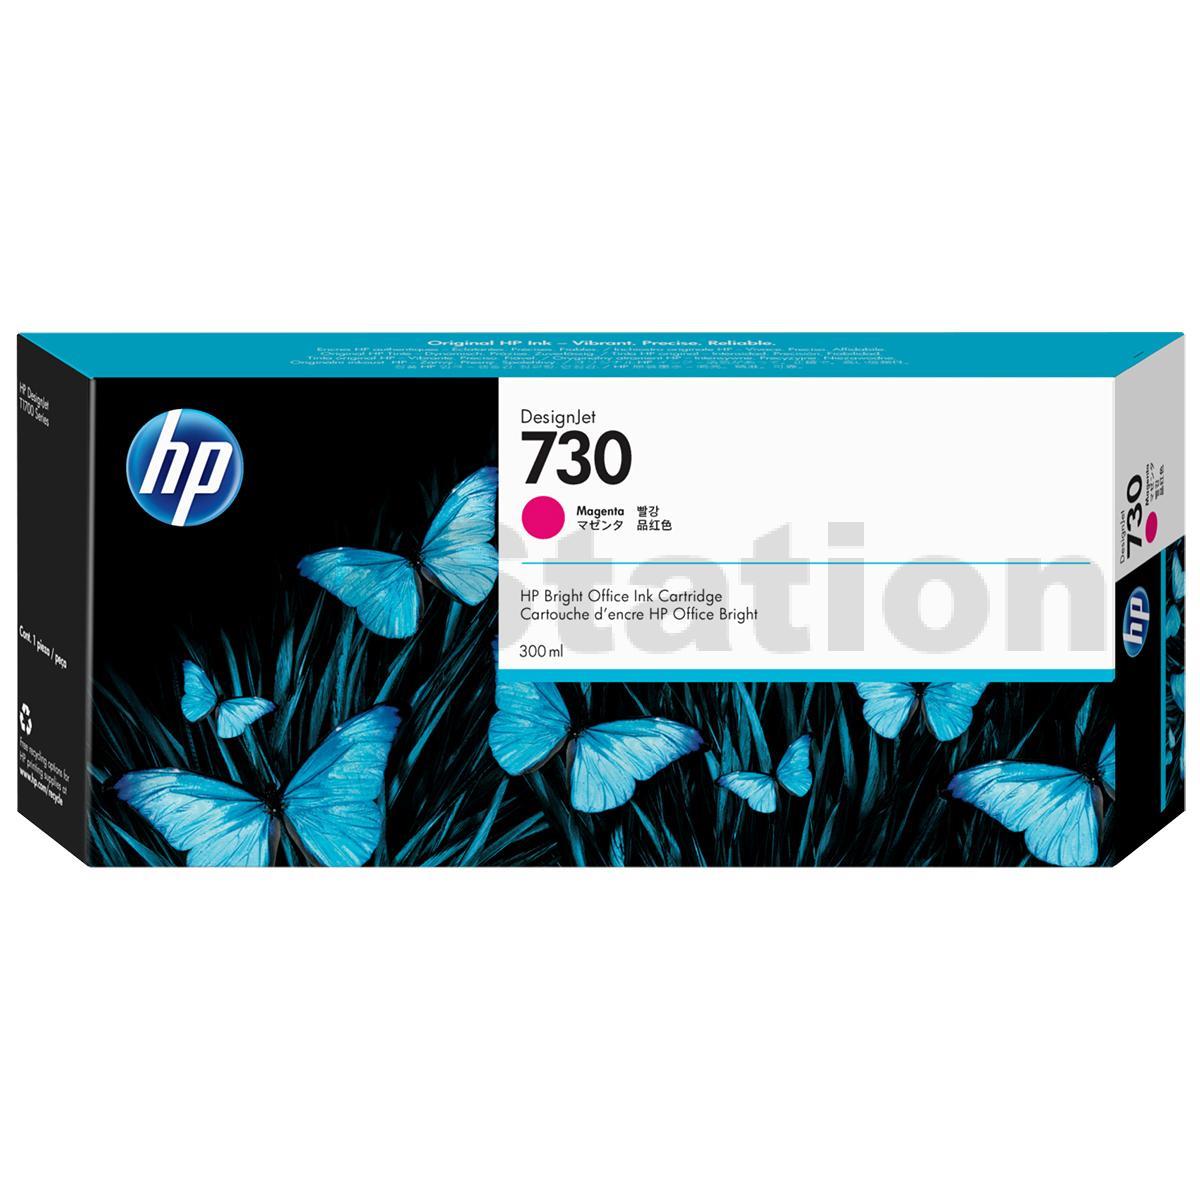 HP Designjet T1700 Magenta Ink Cartridge